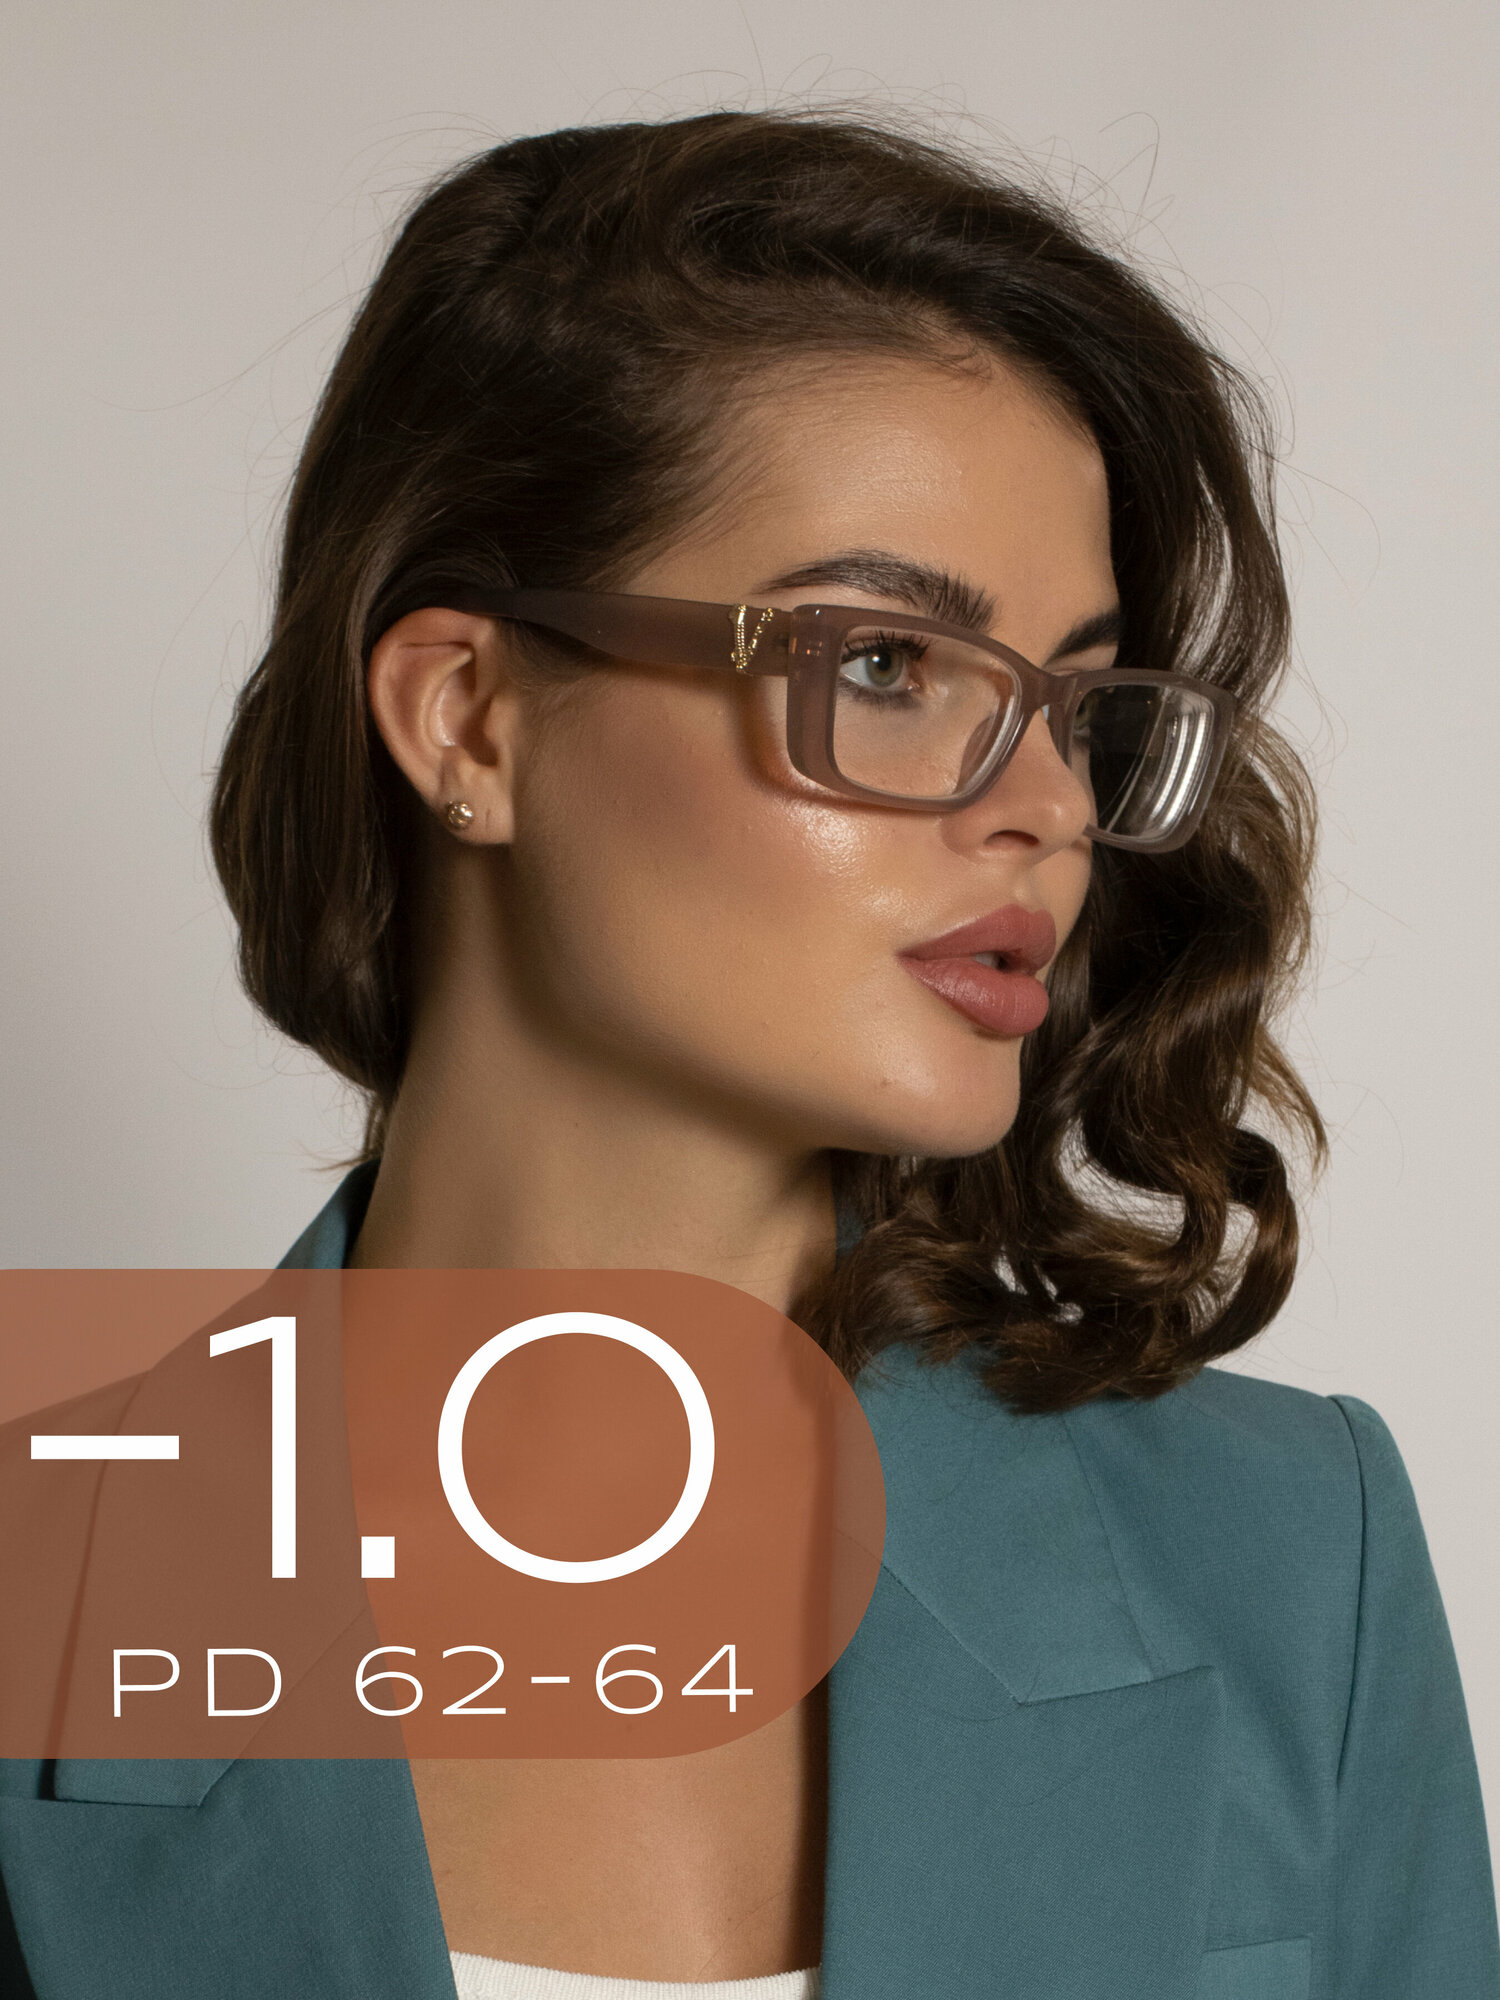 Очки для зрения женские -1.0 / Корригирующие очки для зрения -1,0 / Стильные очки с диоптрией -1 / Очки для дали